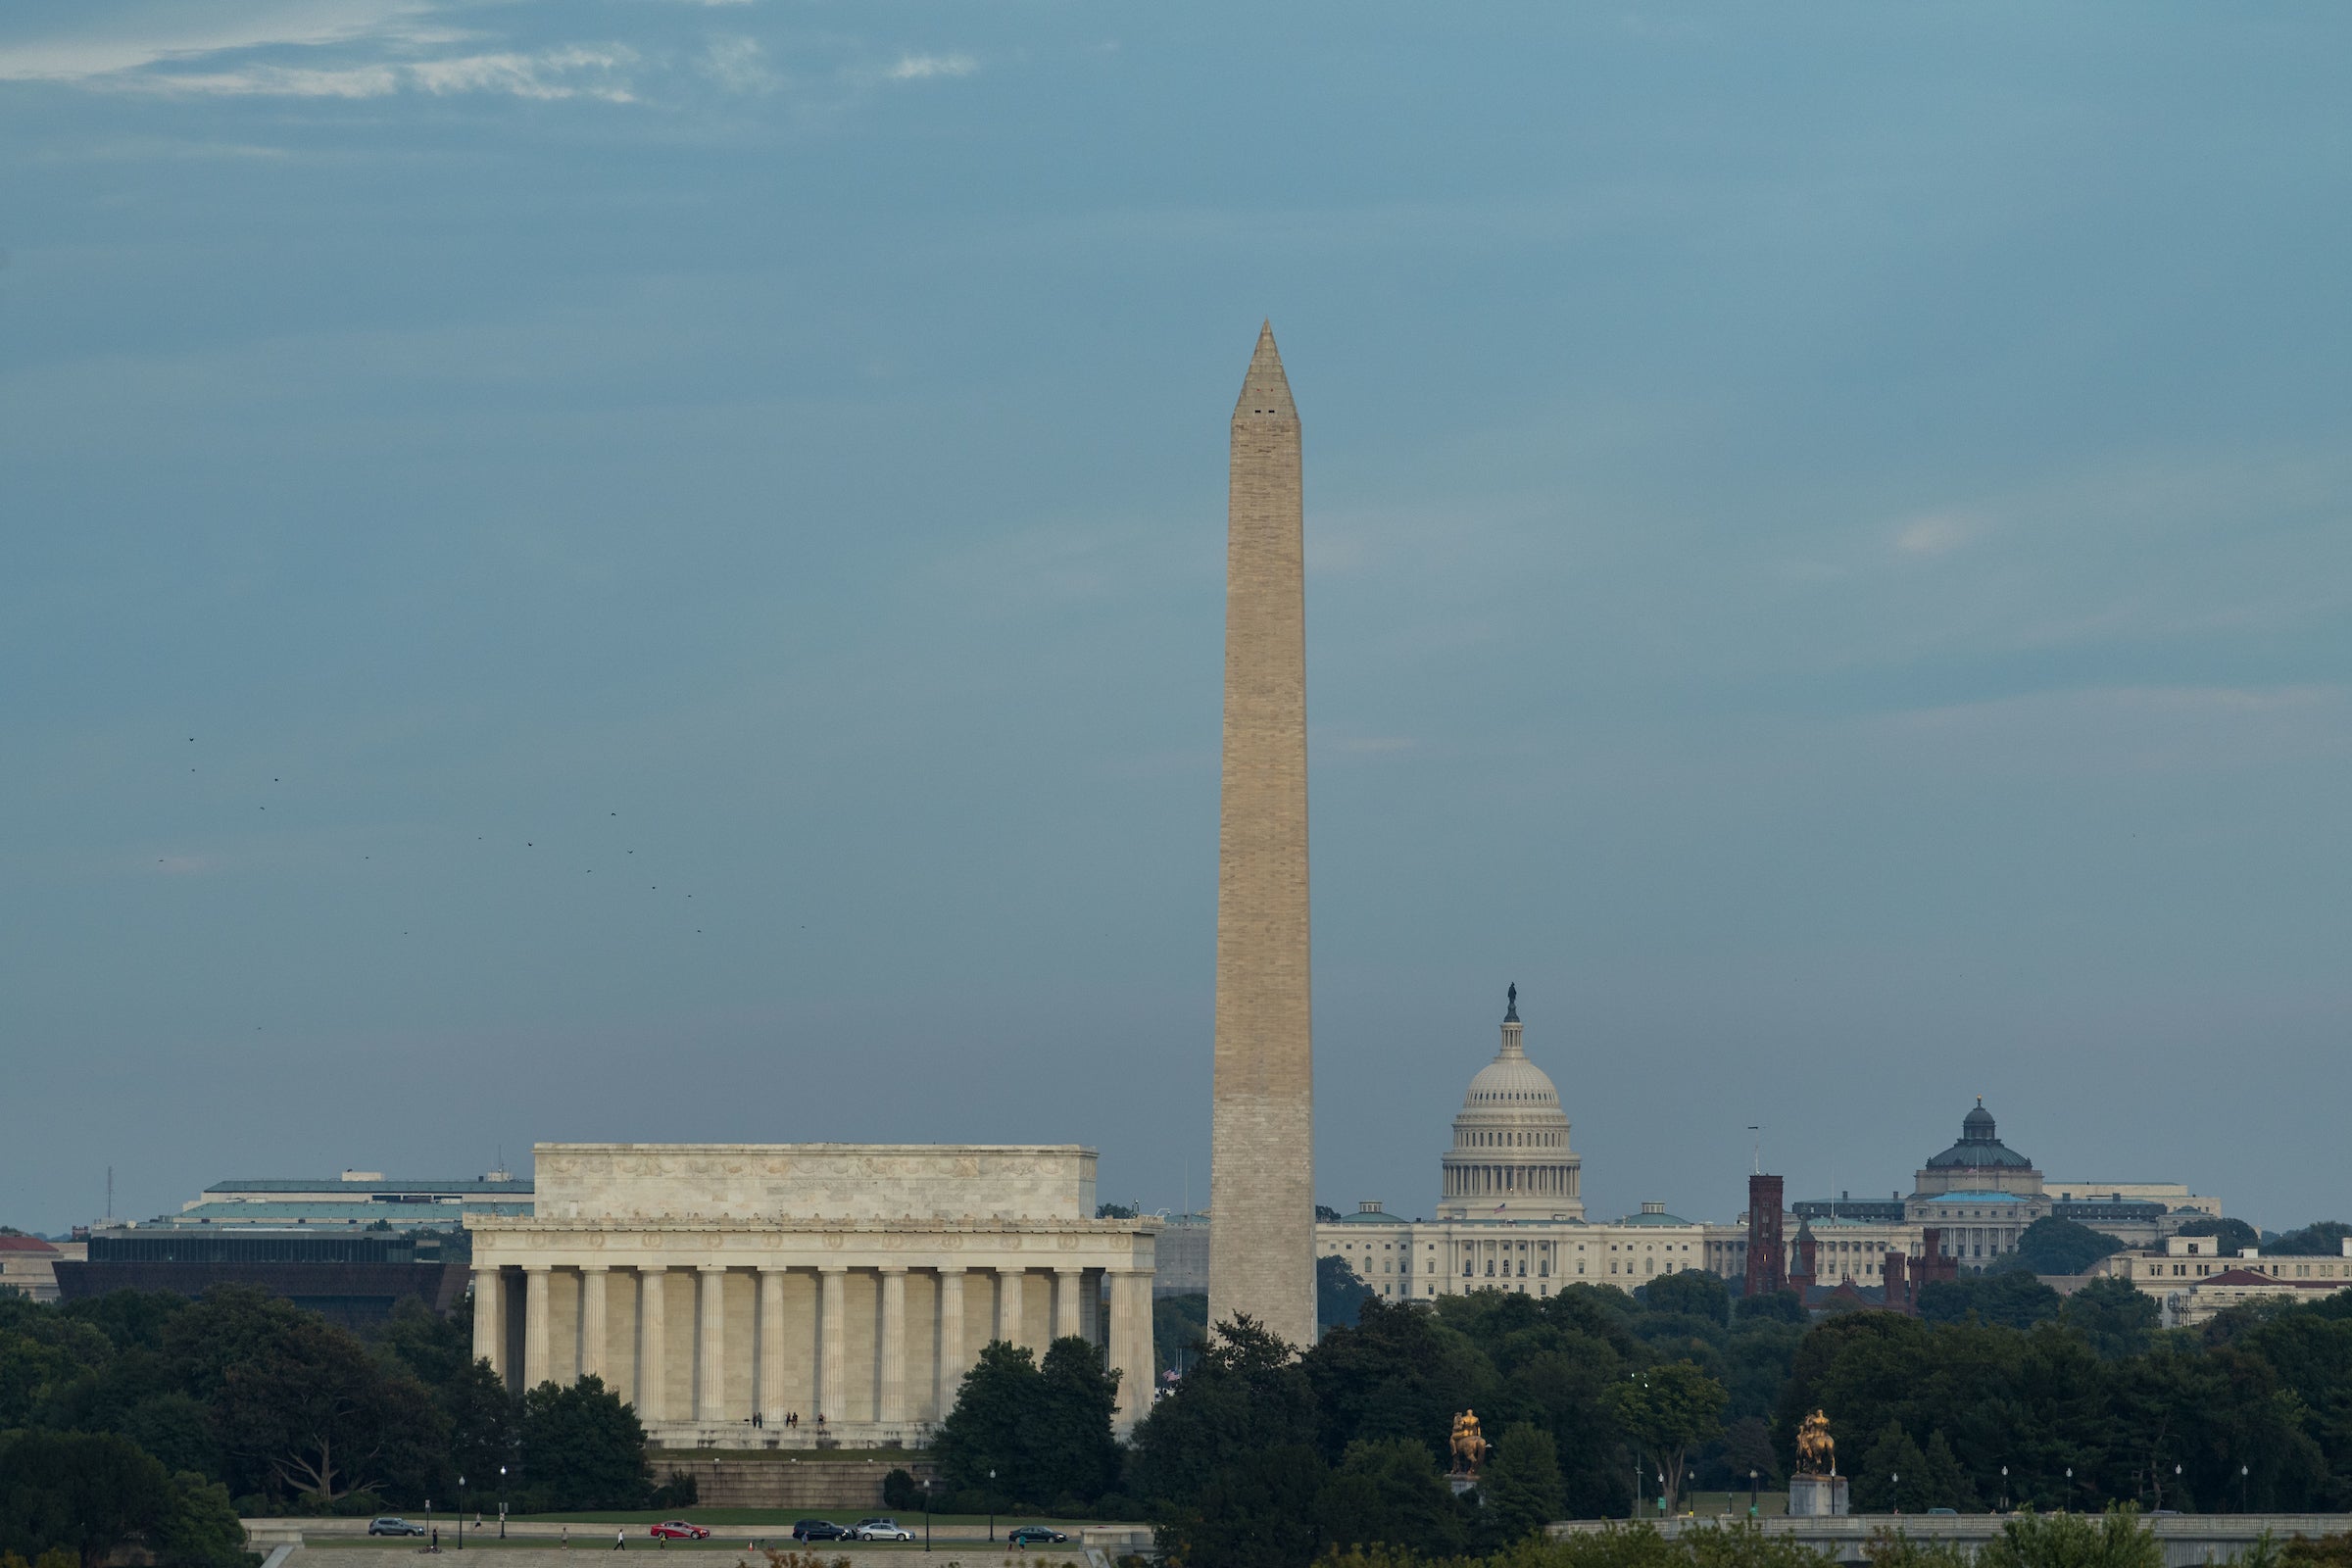 Washington D.C. monuments